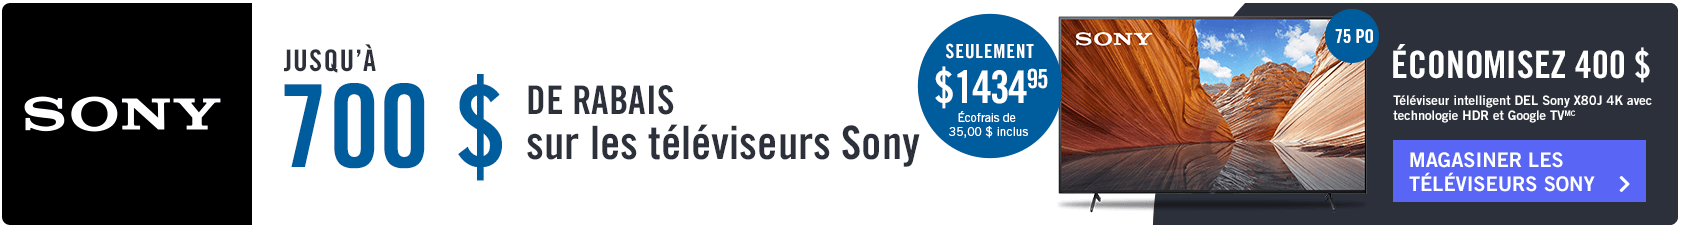 Jusqu'a 700 $ de rabais sur les téléviseurs Sony